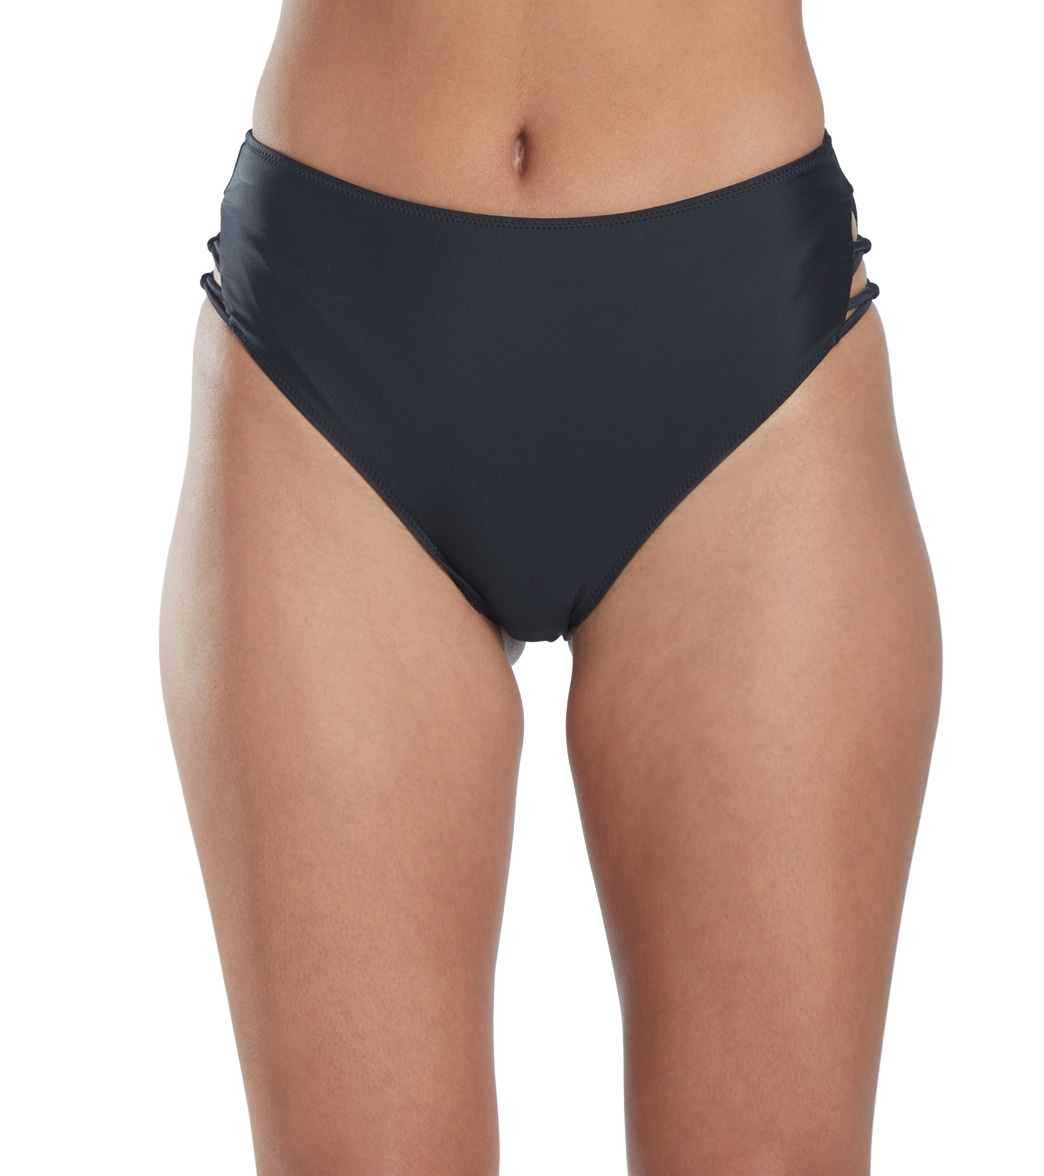 Volcom Simply Solid Retro High Waist Bikini Bottom - Black 22W - Swimoutlet.com